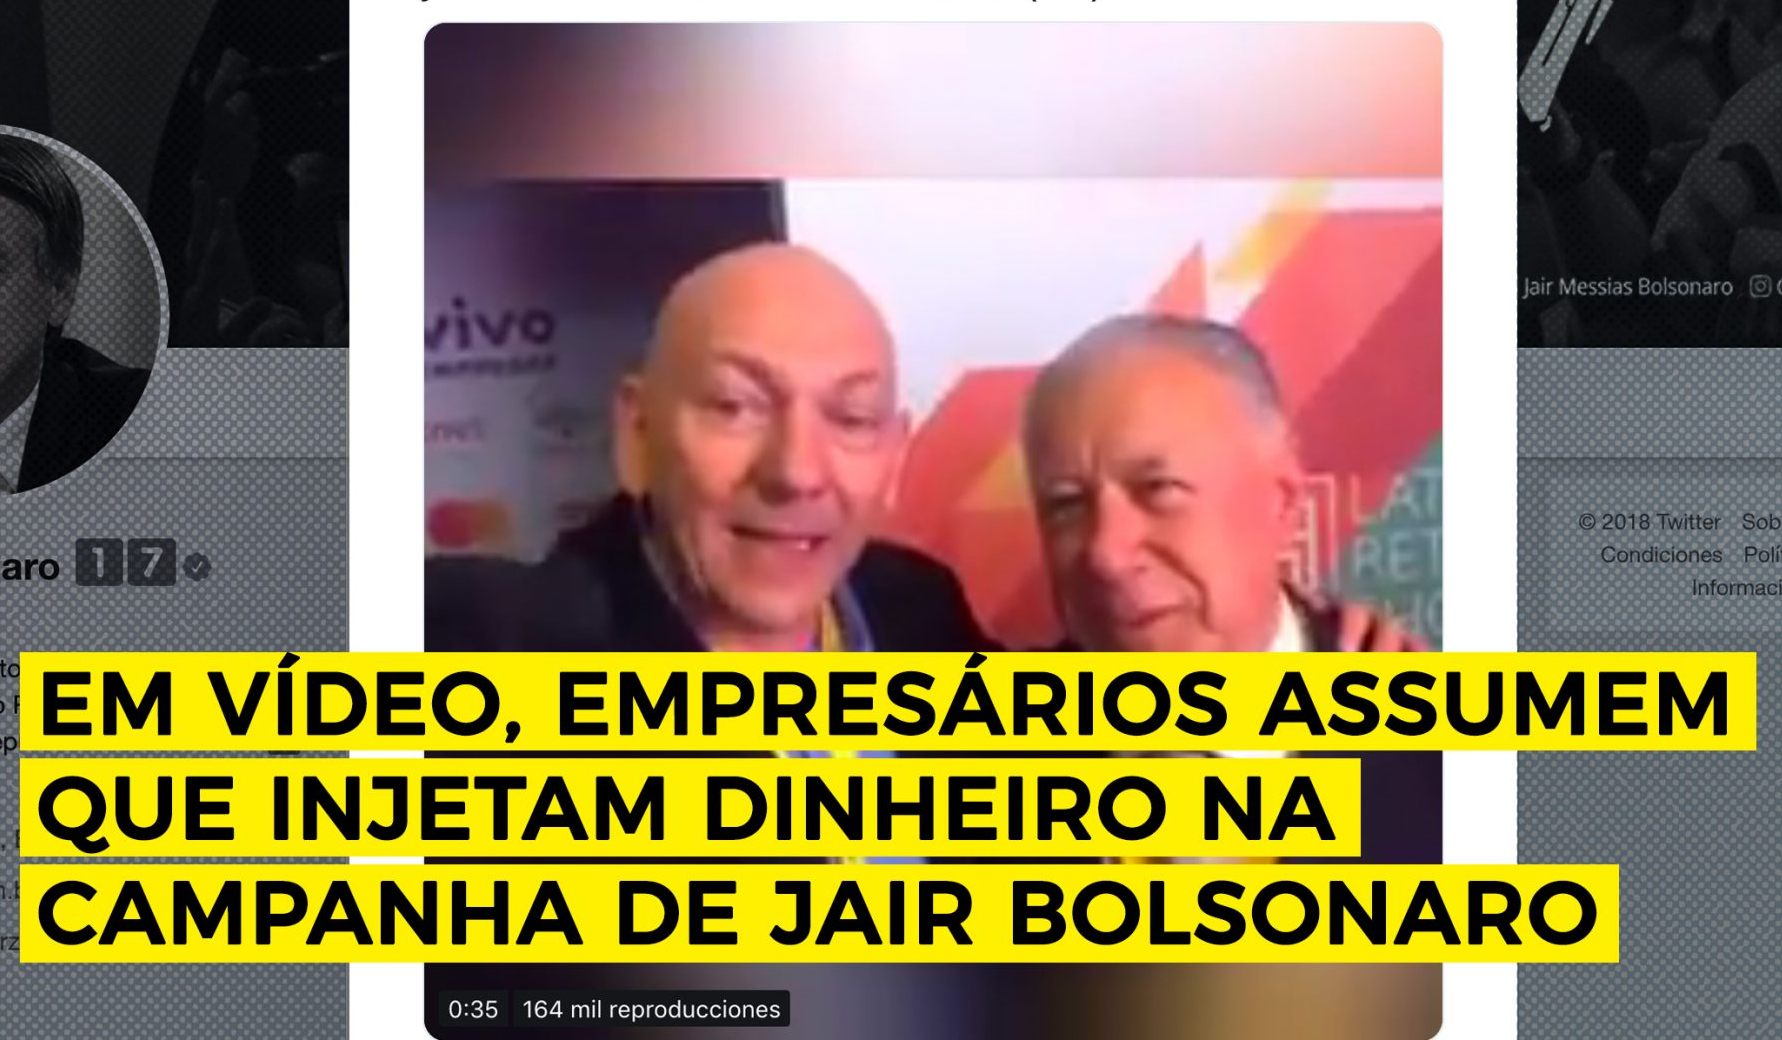 Empresários assumem injetar dinheiro na campanha de Bolsonaro